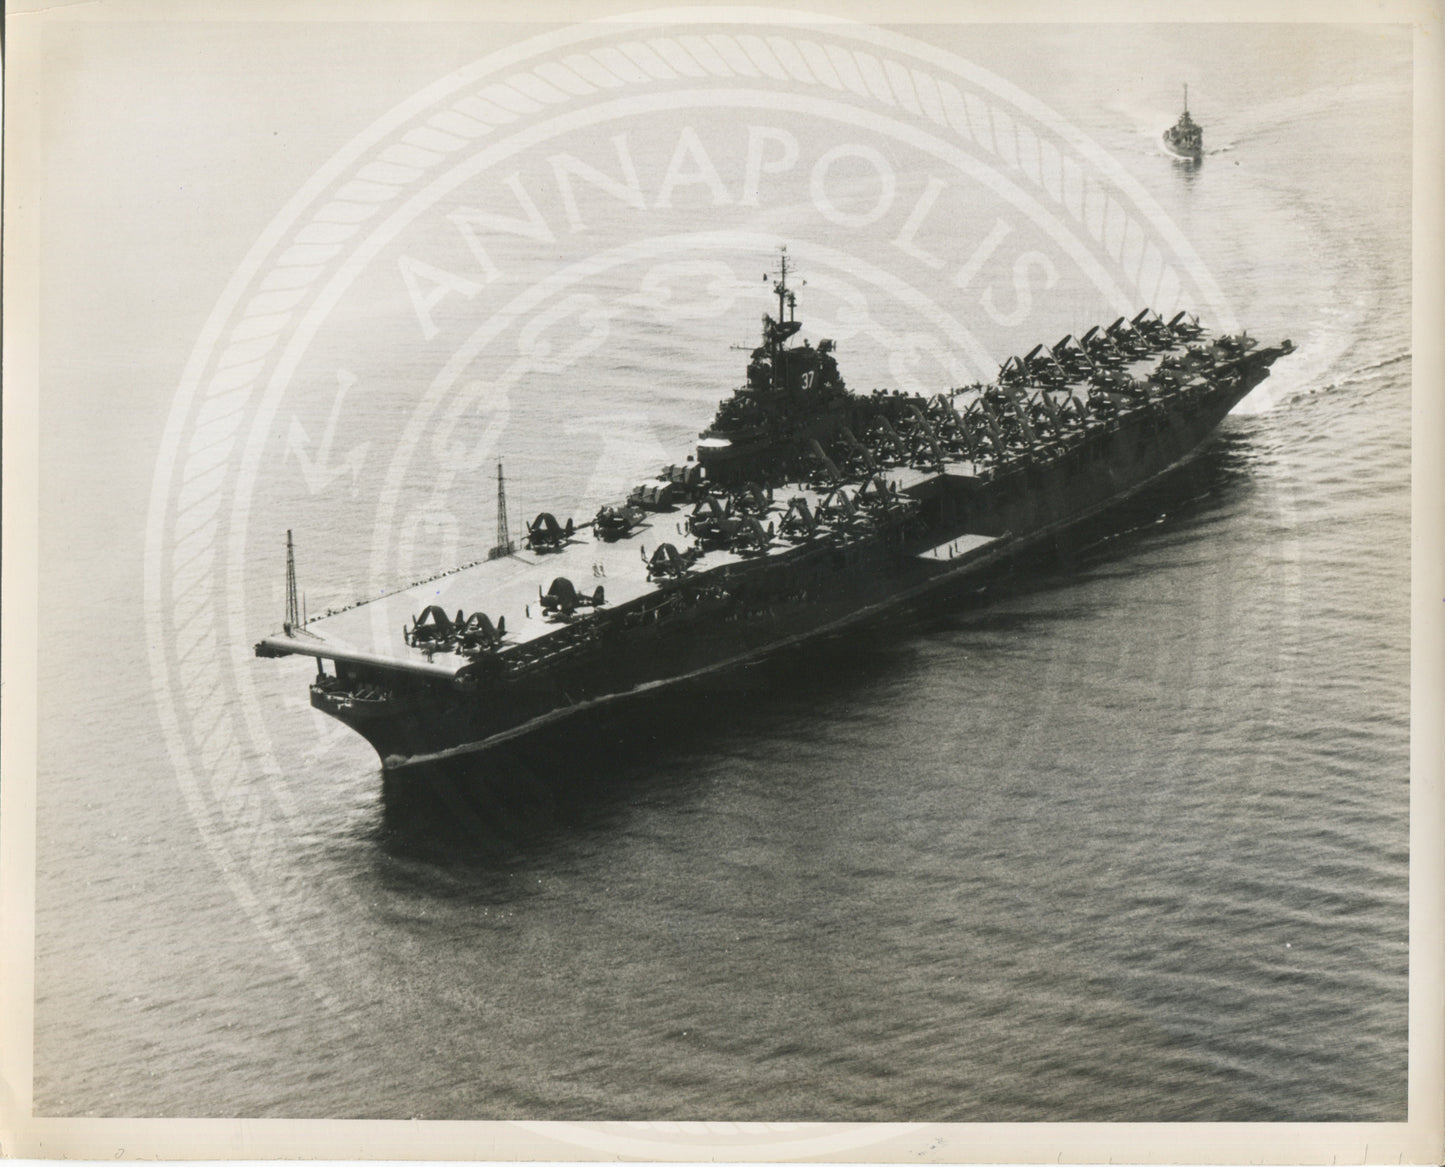 USS Princeton (CV-37) Aircraft Carrier